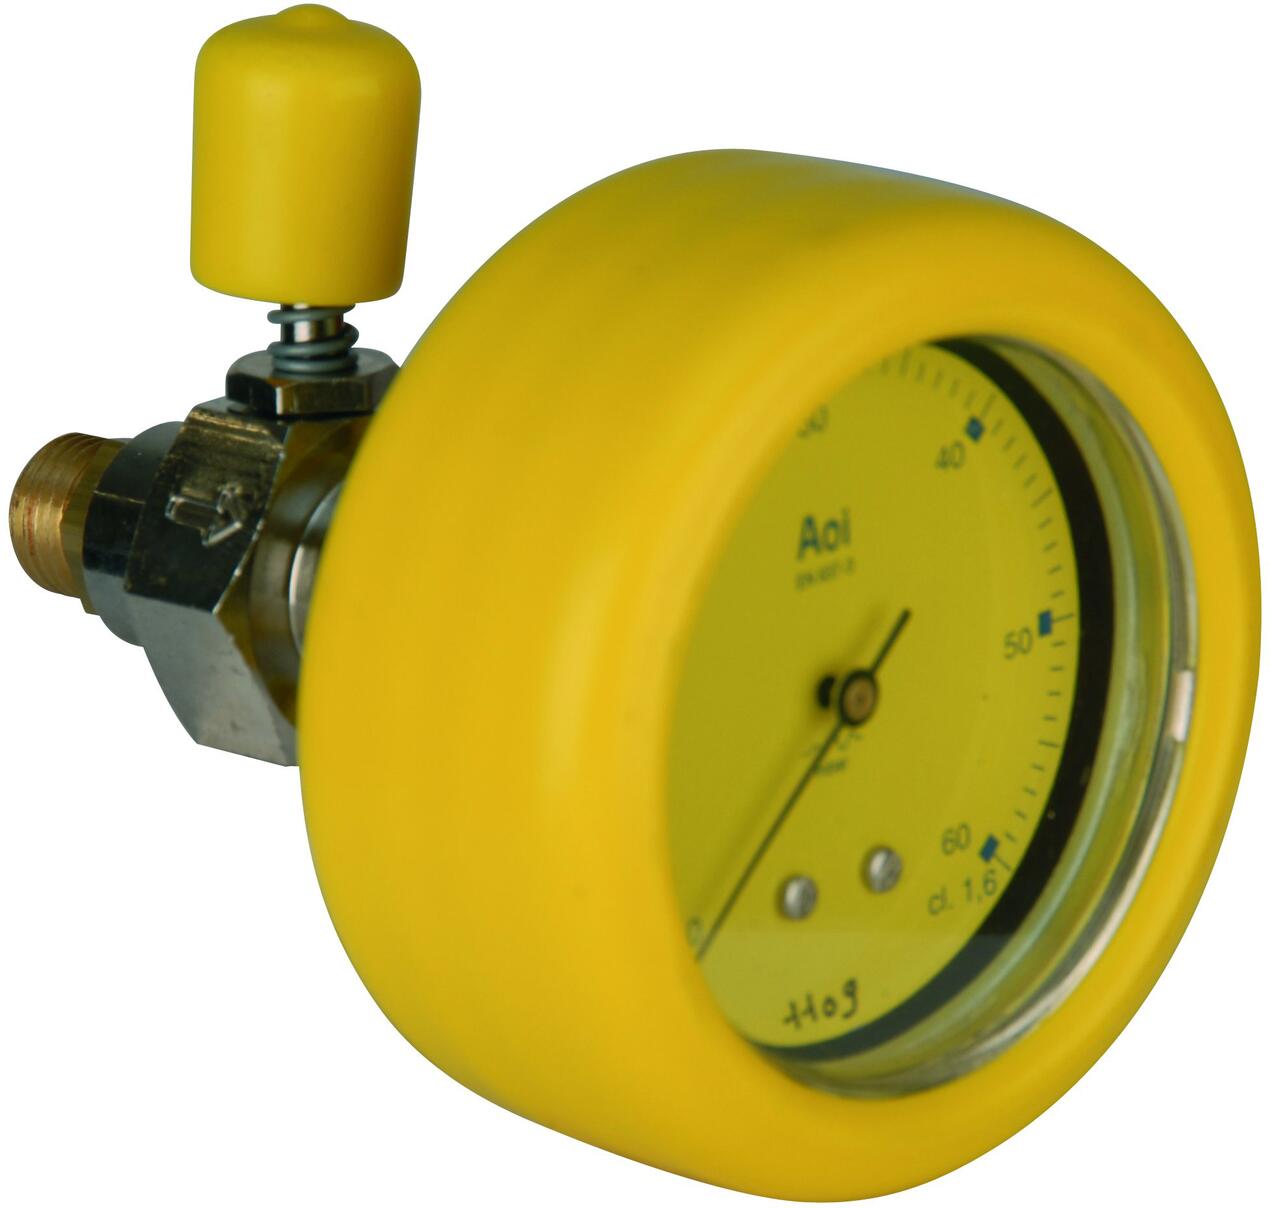 GAZ NATUREL - GAZ BUTANE - GAZ PROPANE - Kit manomètre + robinet pour capacité tampon